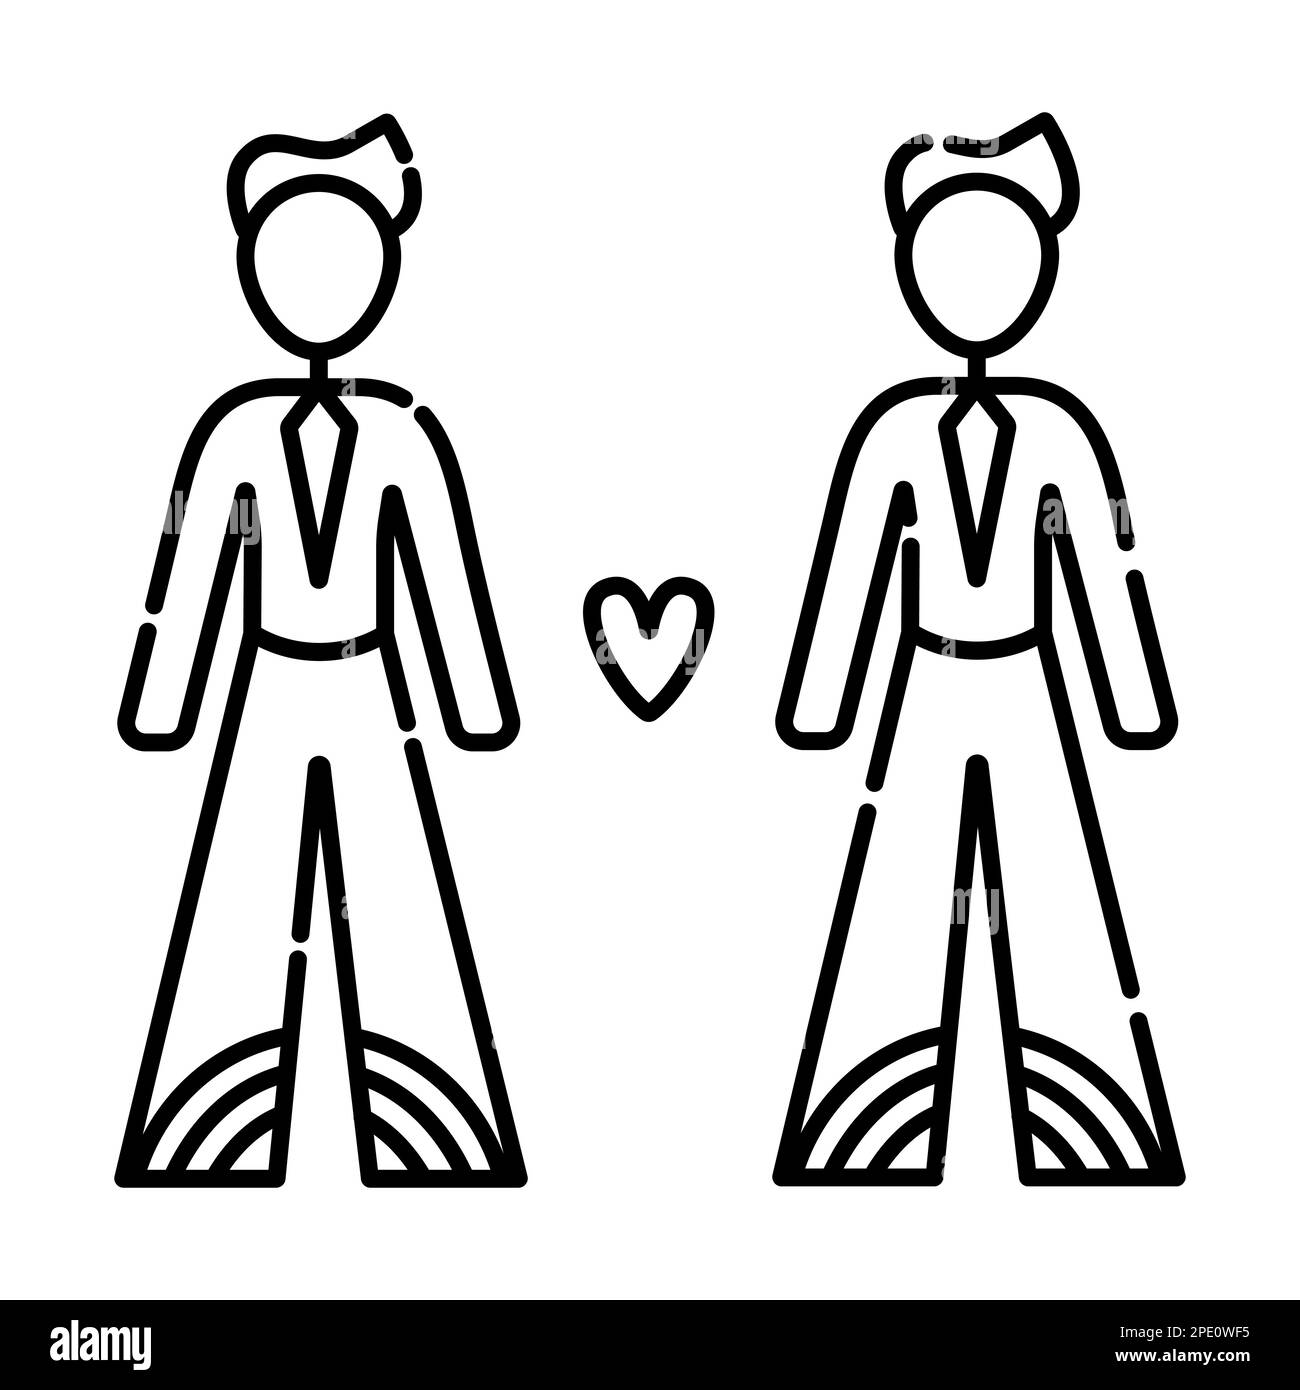 Deux gays en amour, illustration de ligne noire dans un style minimaliste Illustration de Vecteur